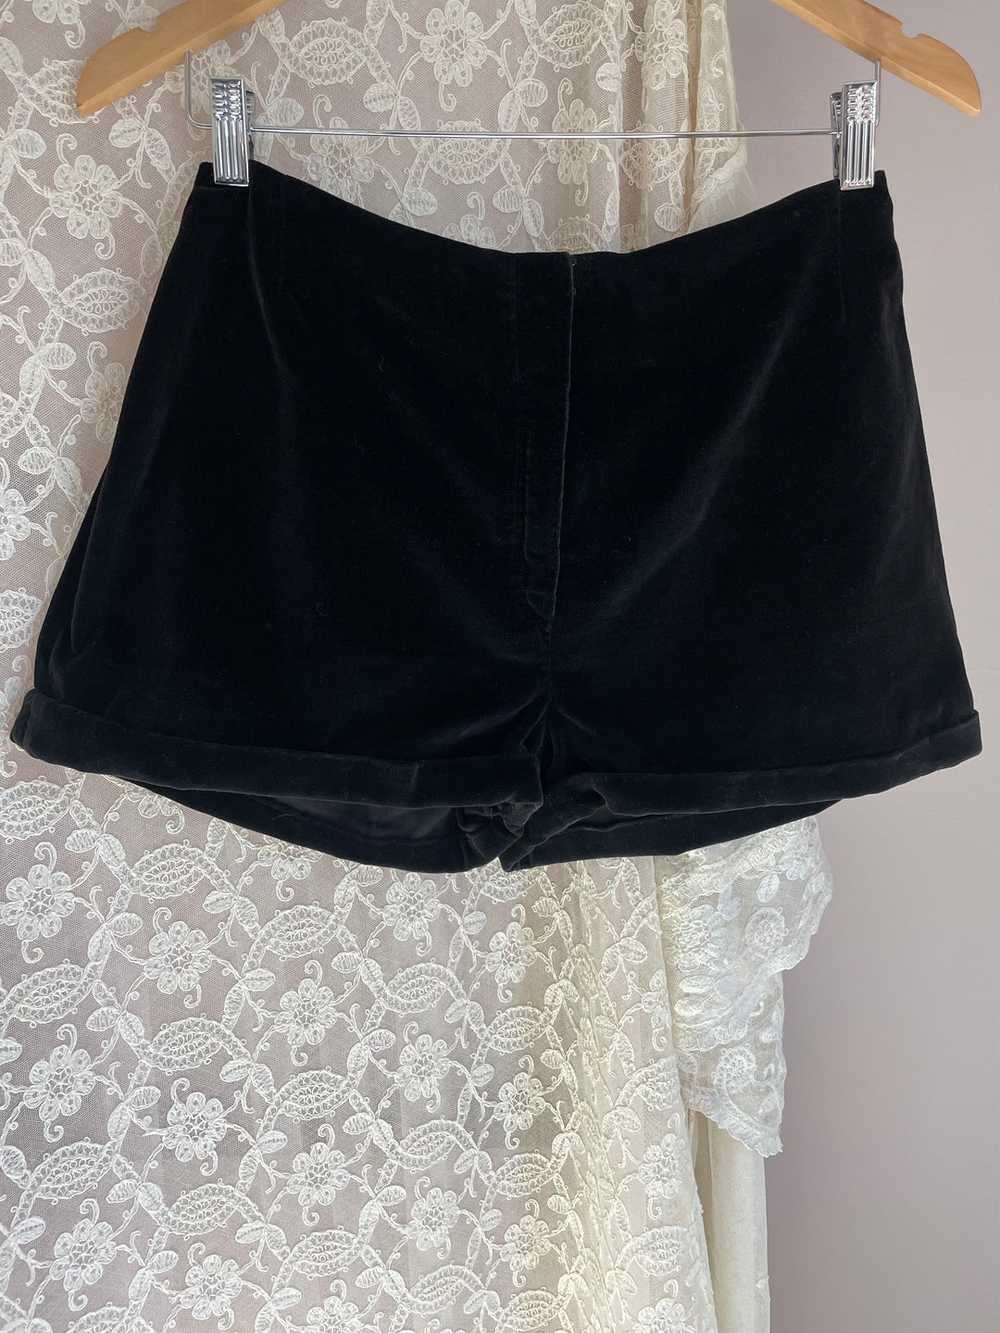 1970s Black Velvet Shorts Pocket - image 10